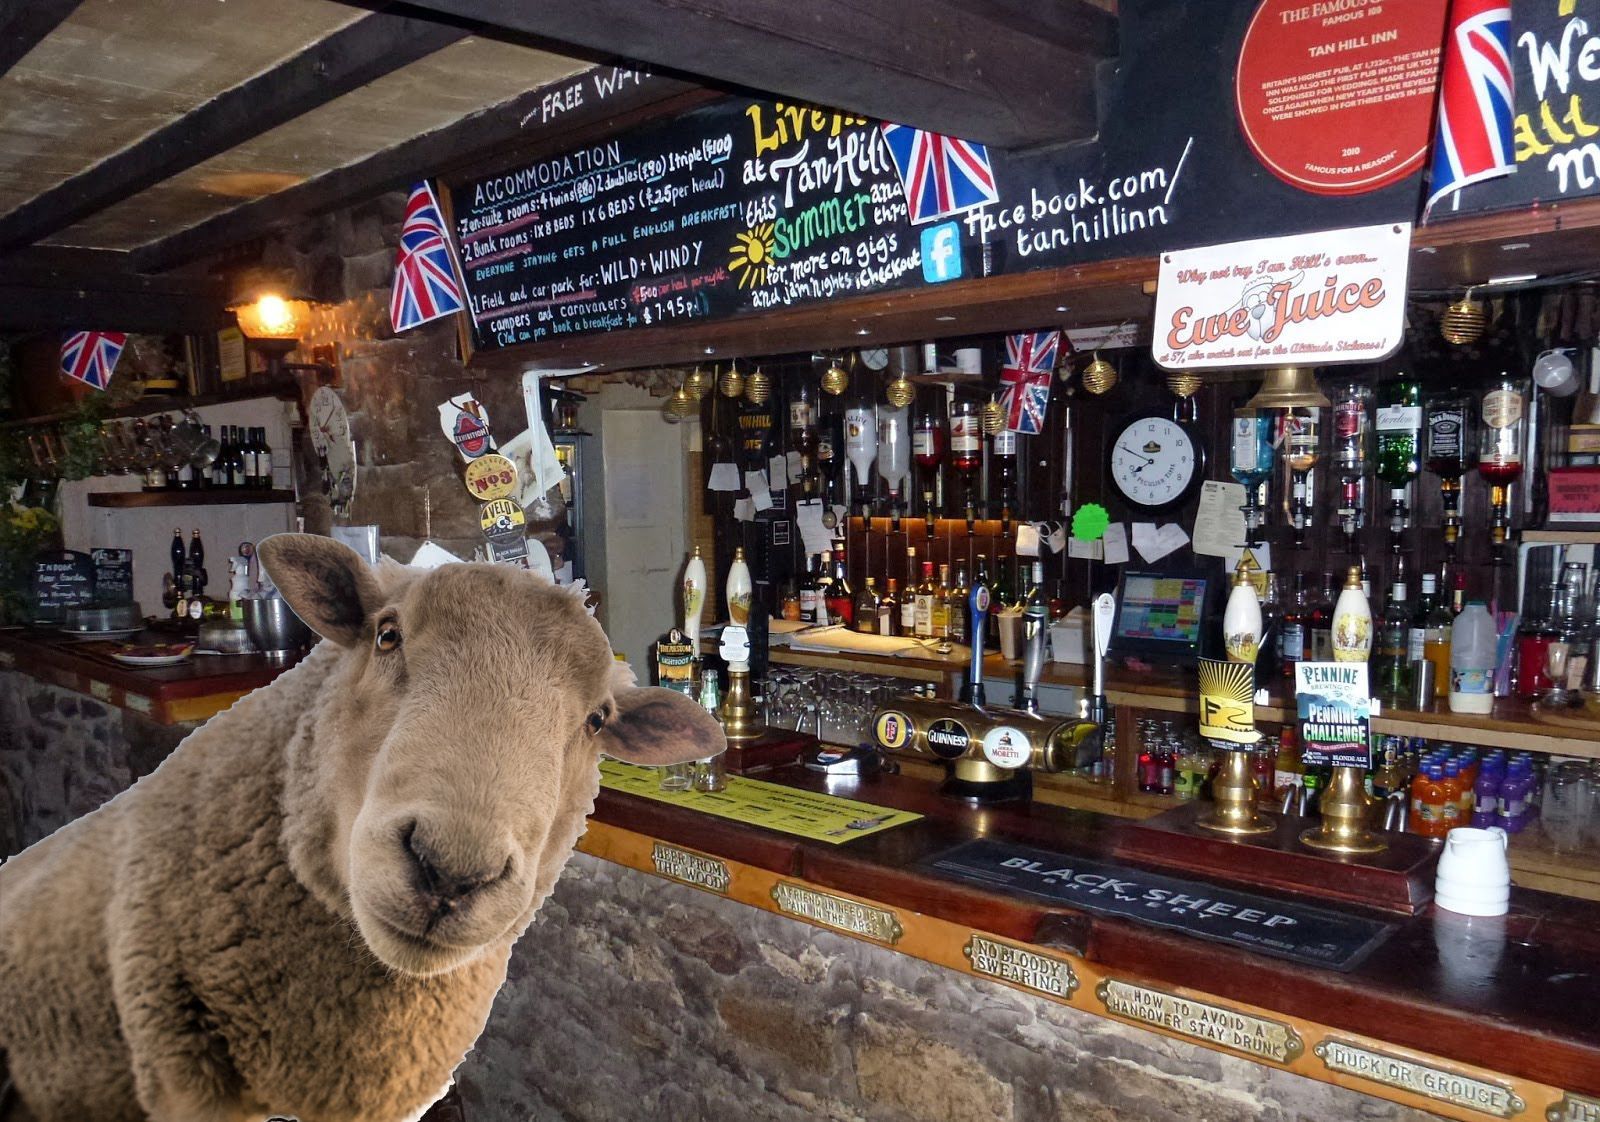 a sheep i the tan hill inn